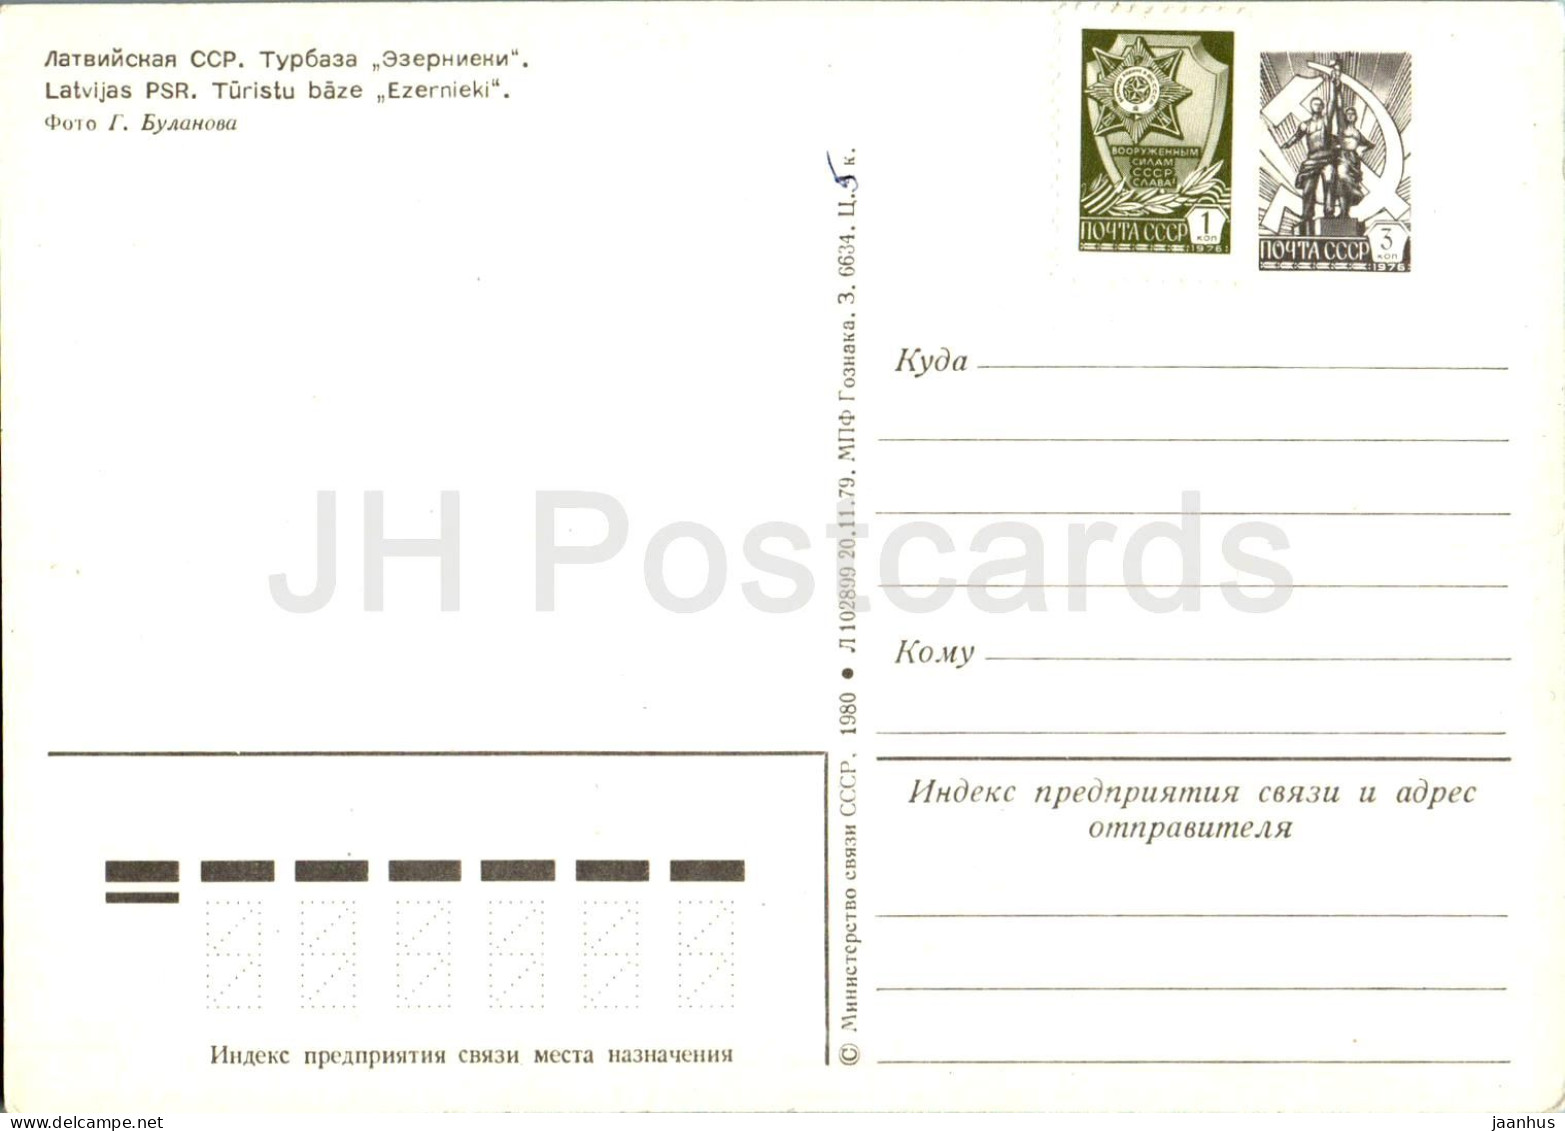 Tourist Base Ezernieki - Postal Stationery - 1980 - Latvia USSR - Unused - Lettland